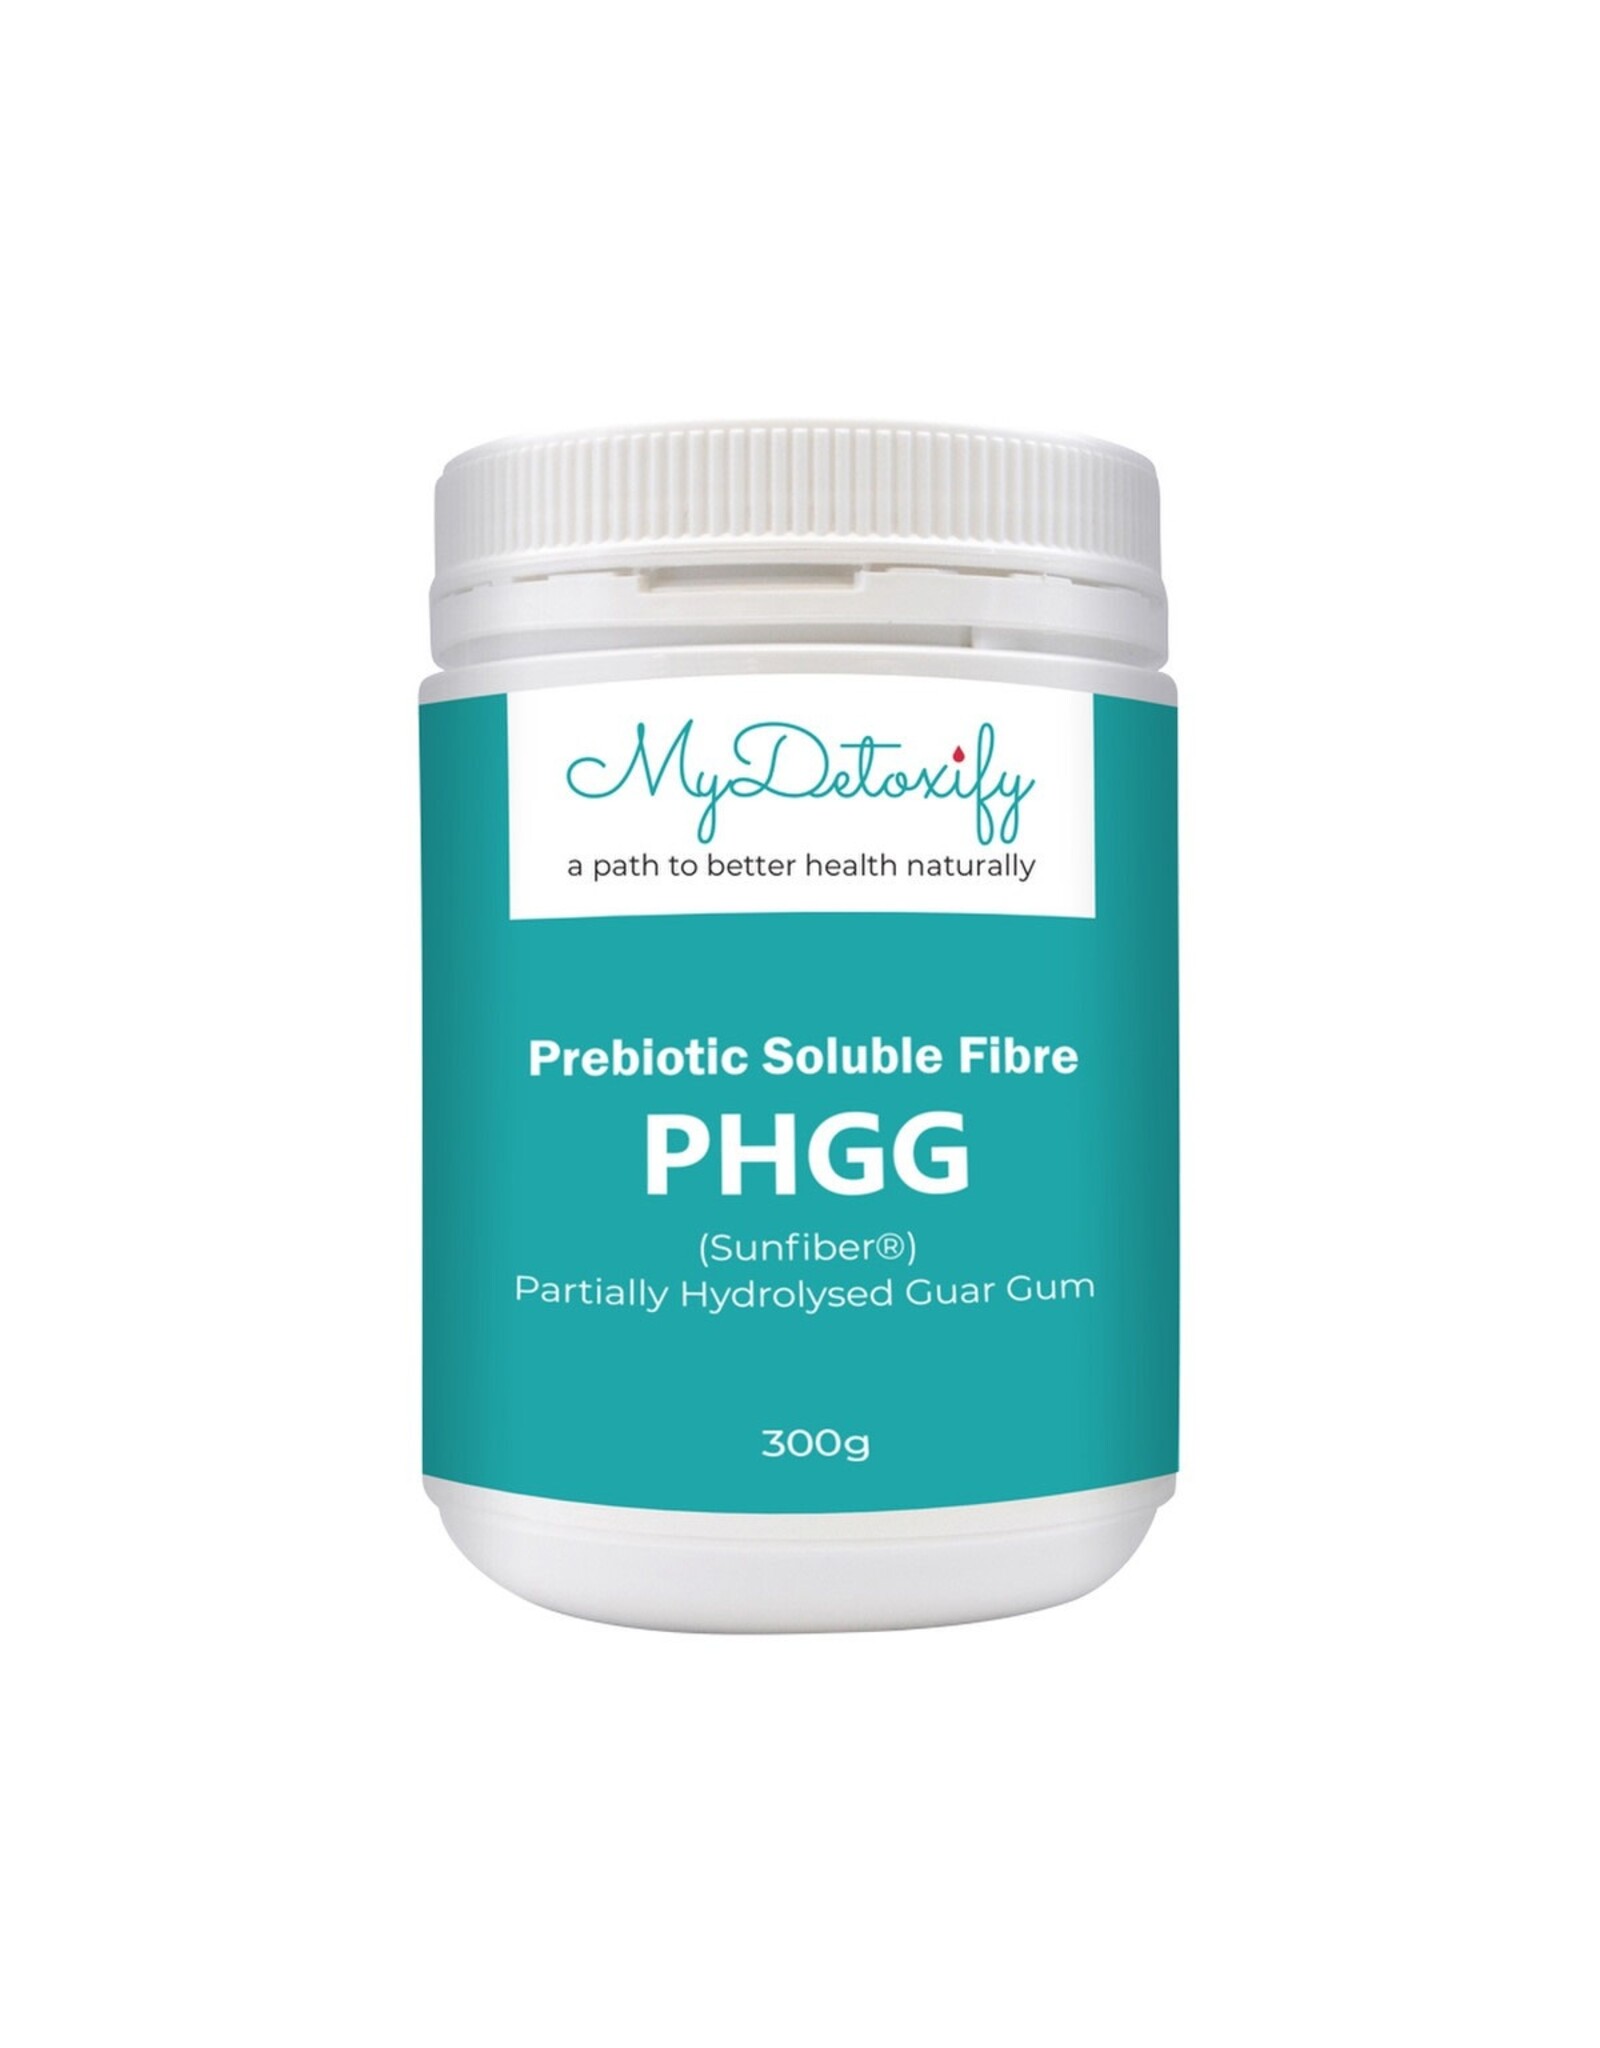 MyDetoxify Prebiotic Soluble Fibre PHGG 300g